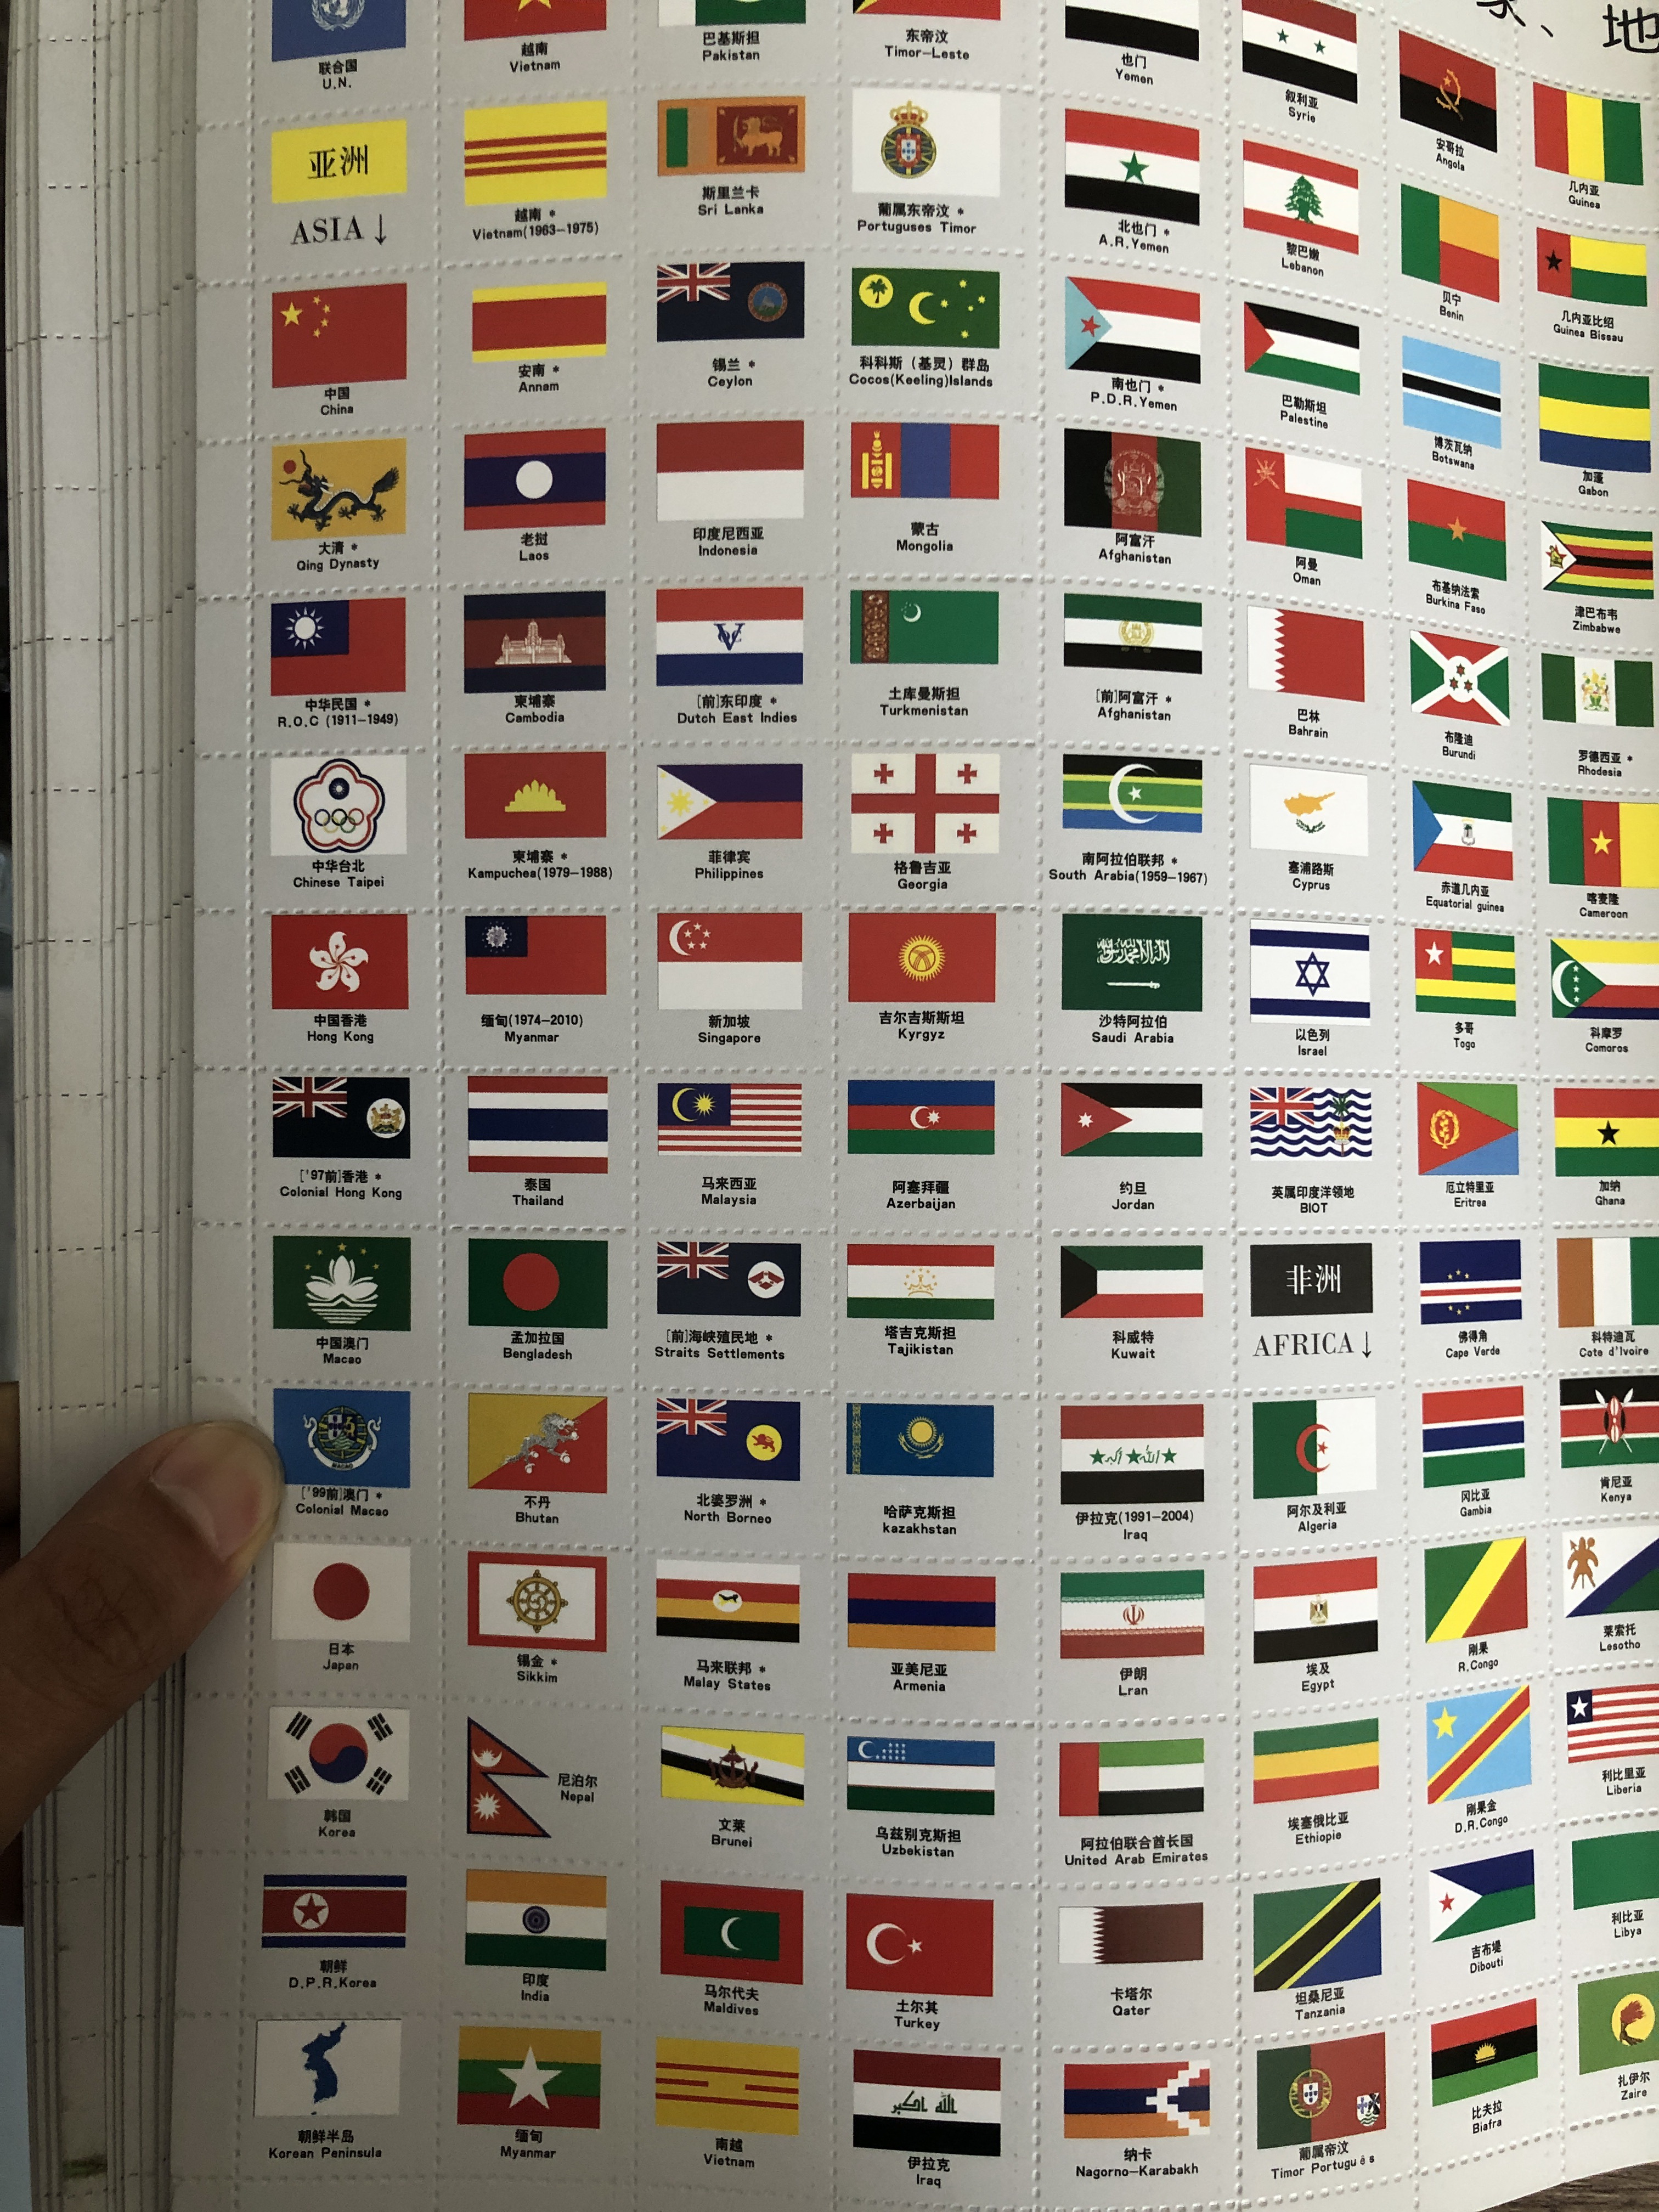 Bộ Quốc Kỳ Các Nước: Trải nghiệm hình ảnh tuyệt đẹp của bộ sưu tập các quốc kỳ đa dạng từ các nước trên thế giới. Từ nước Mỹ đầy tự do, đến Nhật Bản đầy phiêu lưu, bạn sẽ khám phá được nhiều điều thú vị về lịch sử, văn hóa và con người của các quốc gia khác nhau.